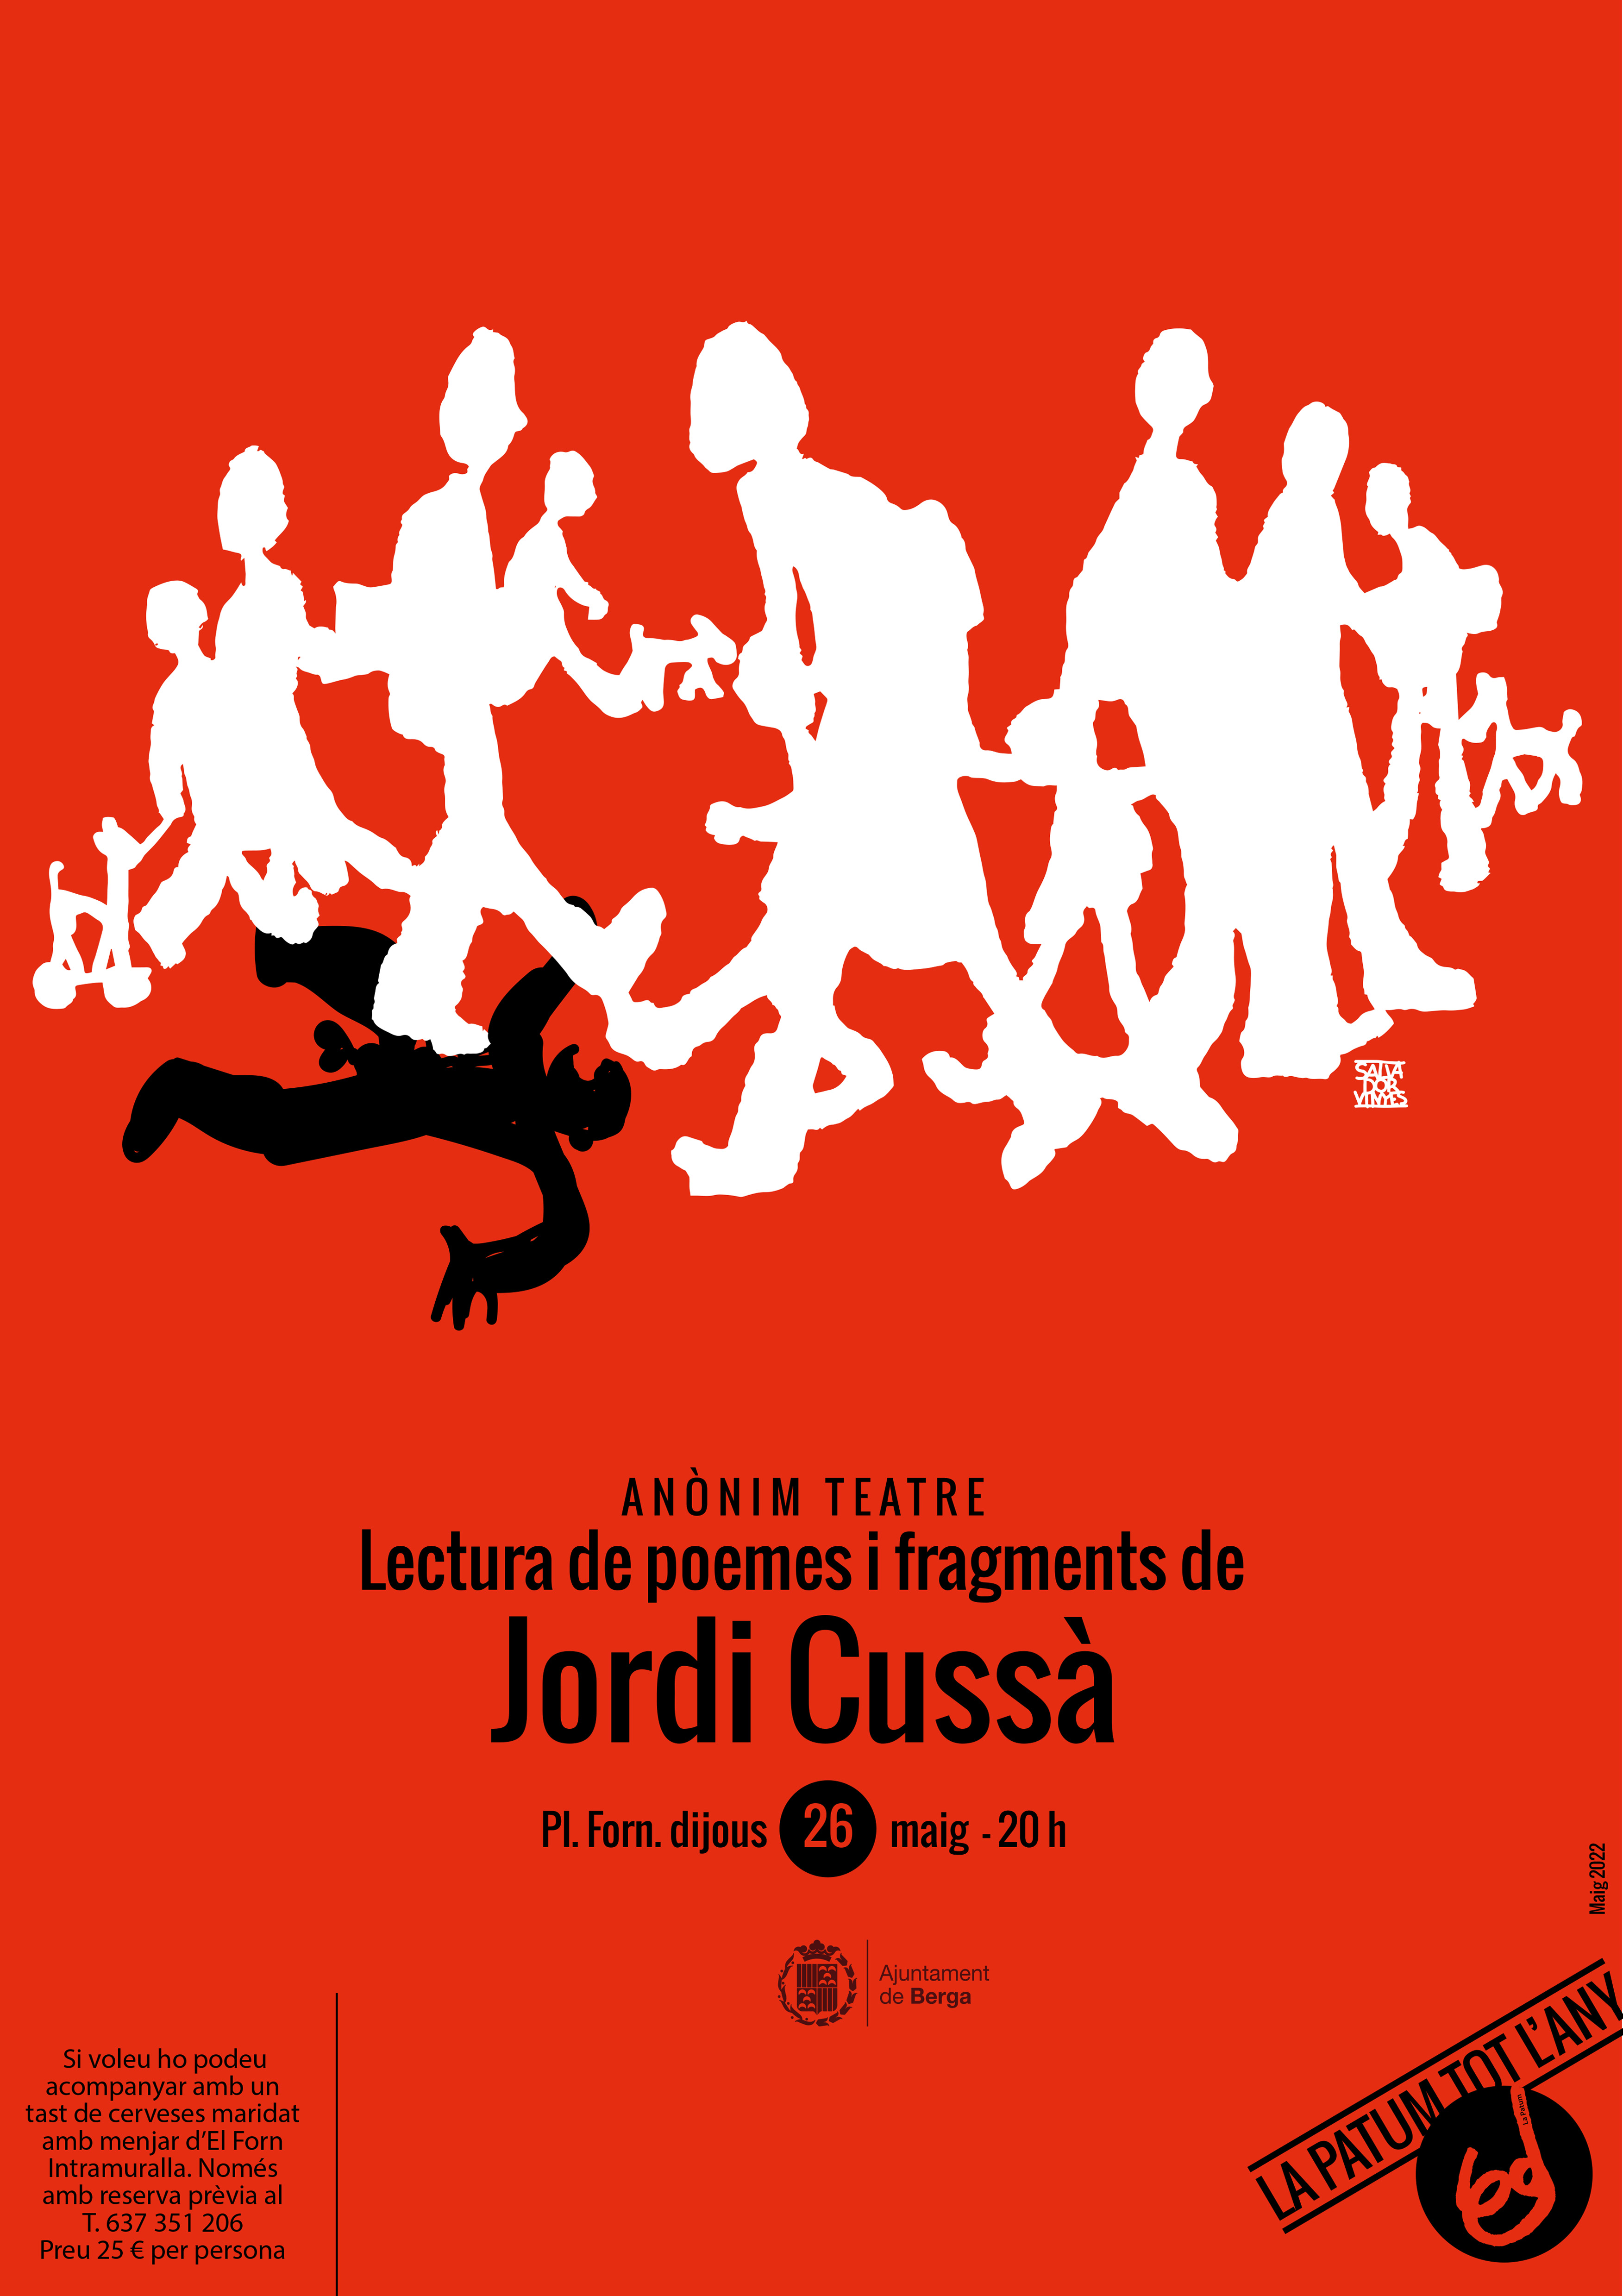 Lectura de poemes i fragments d'obres de Jordi Cussà